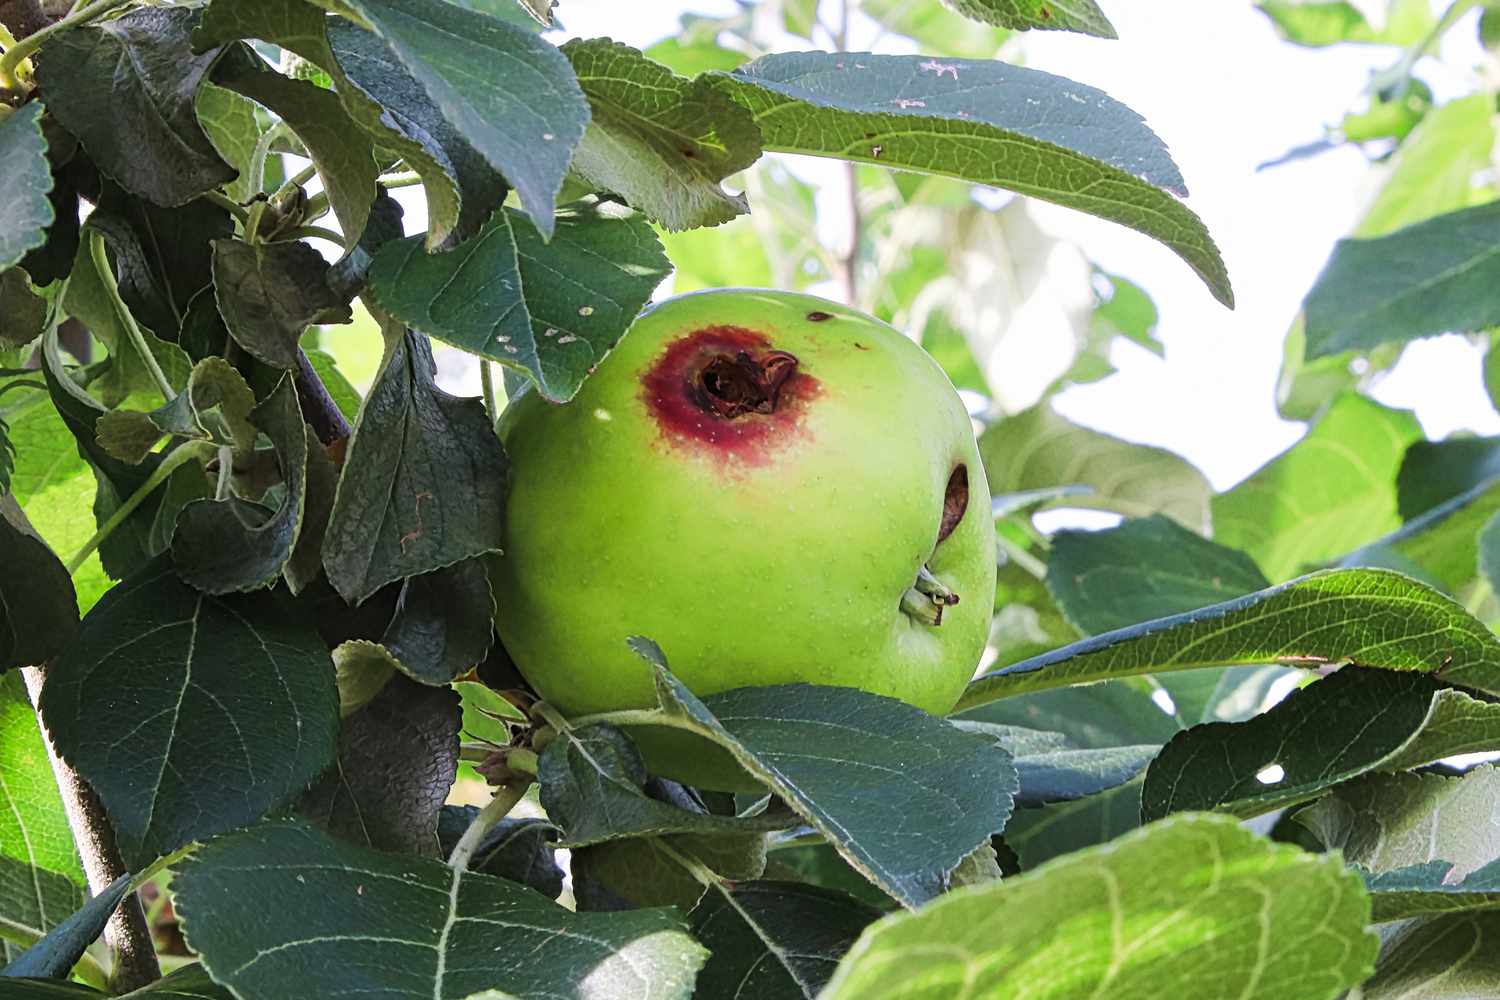 Un agujero en una manzana causado por una polilla de la manzana